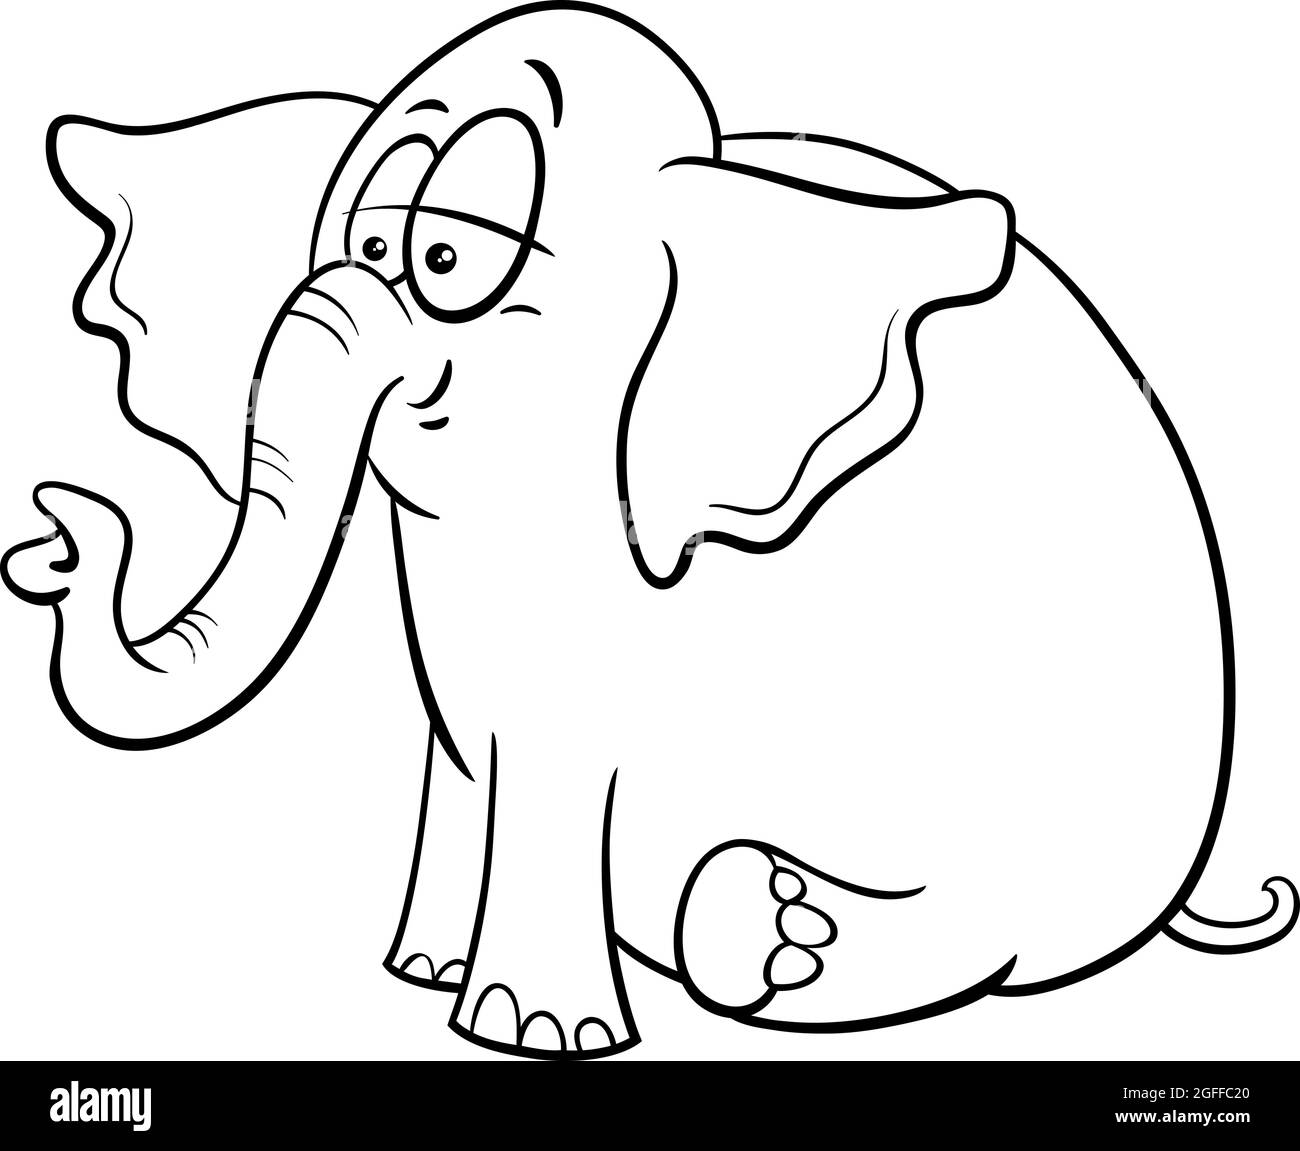 Illustrazione di cartoni animati in bianco e nero di carino bambino elefante fumetto animale carattere colorare pagina del libro Illustrazione Vettoriale